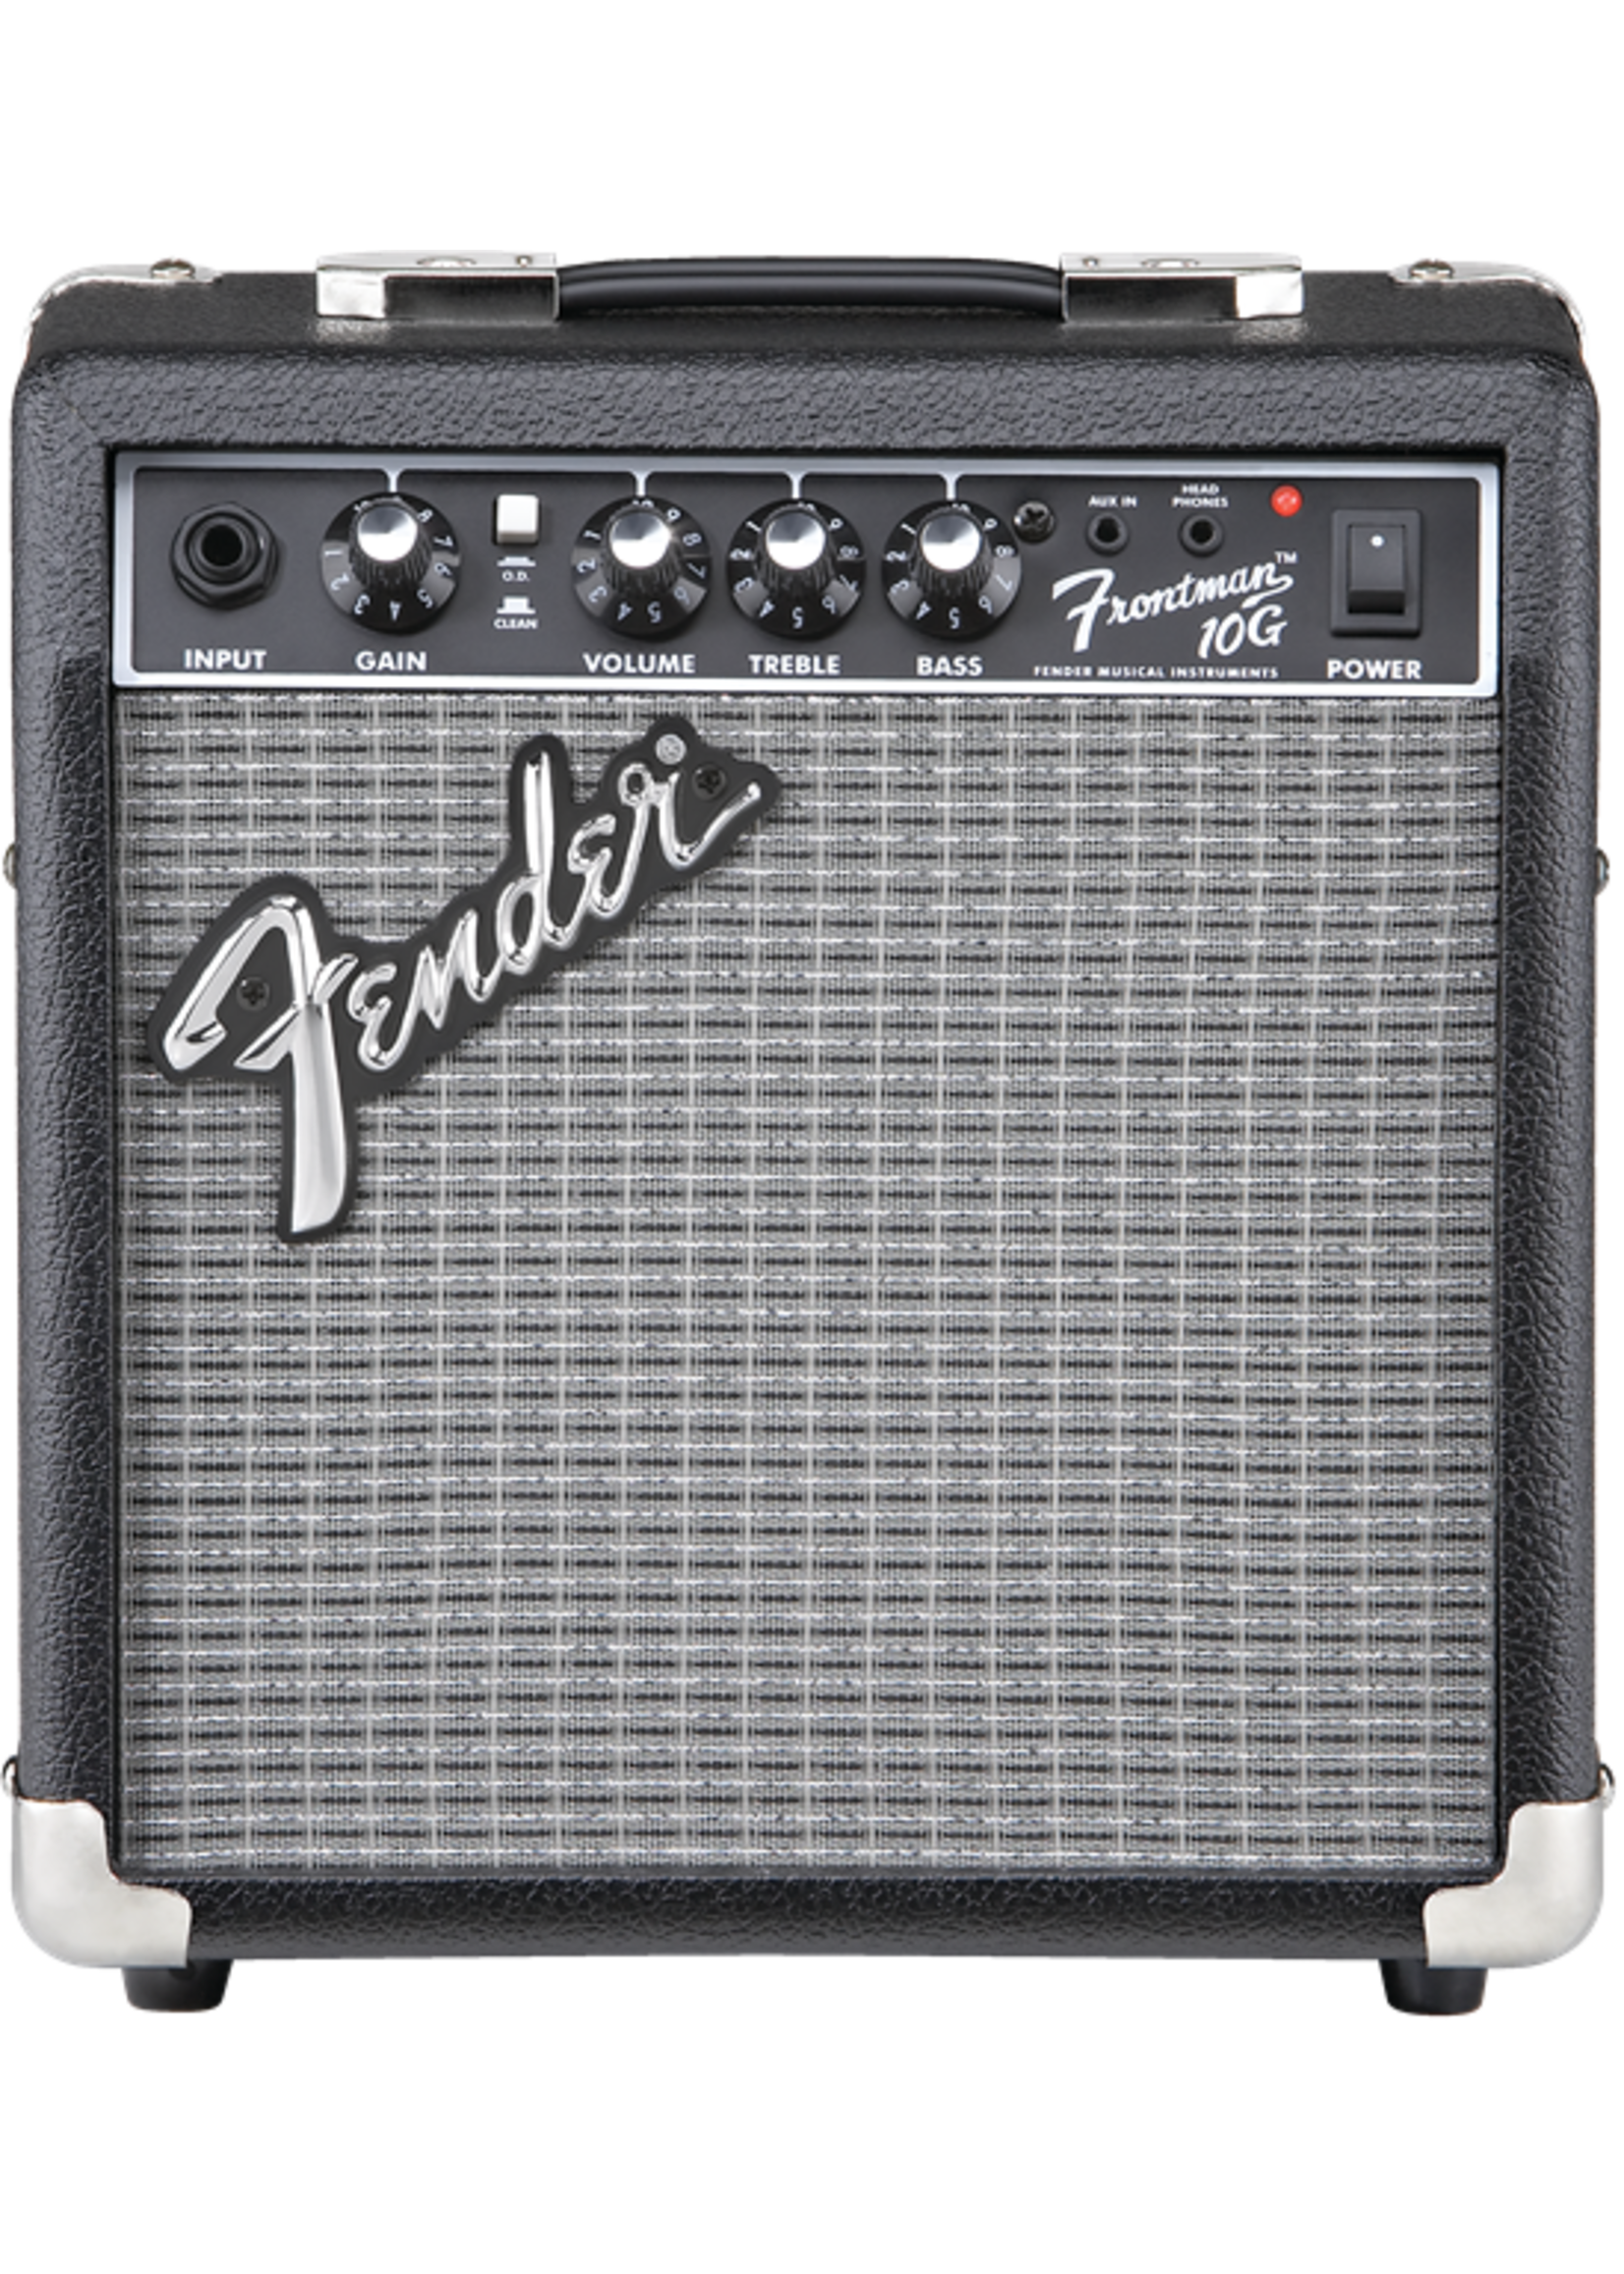 Fender Fender Amplifier Frontman 10G